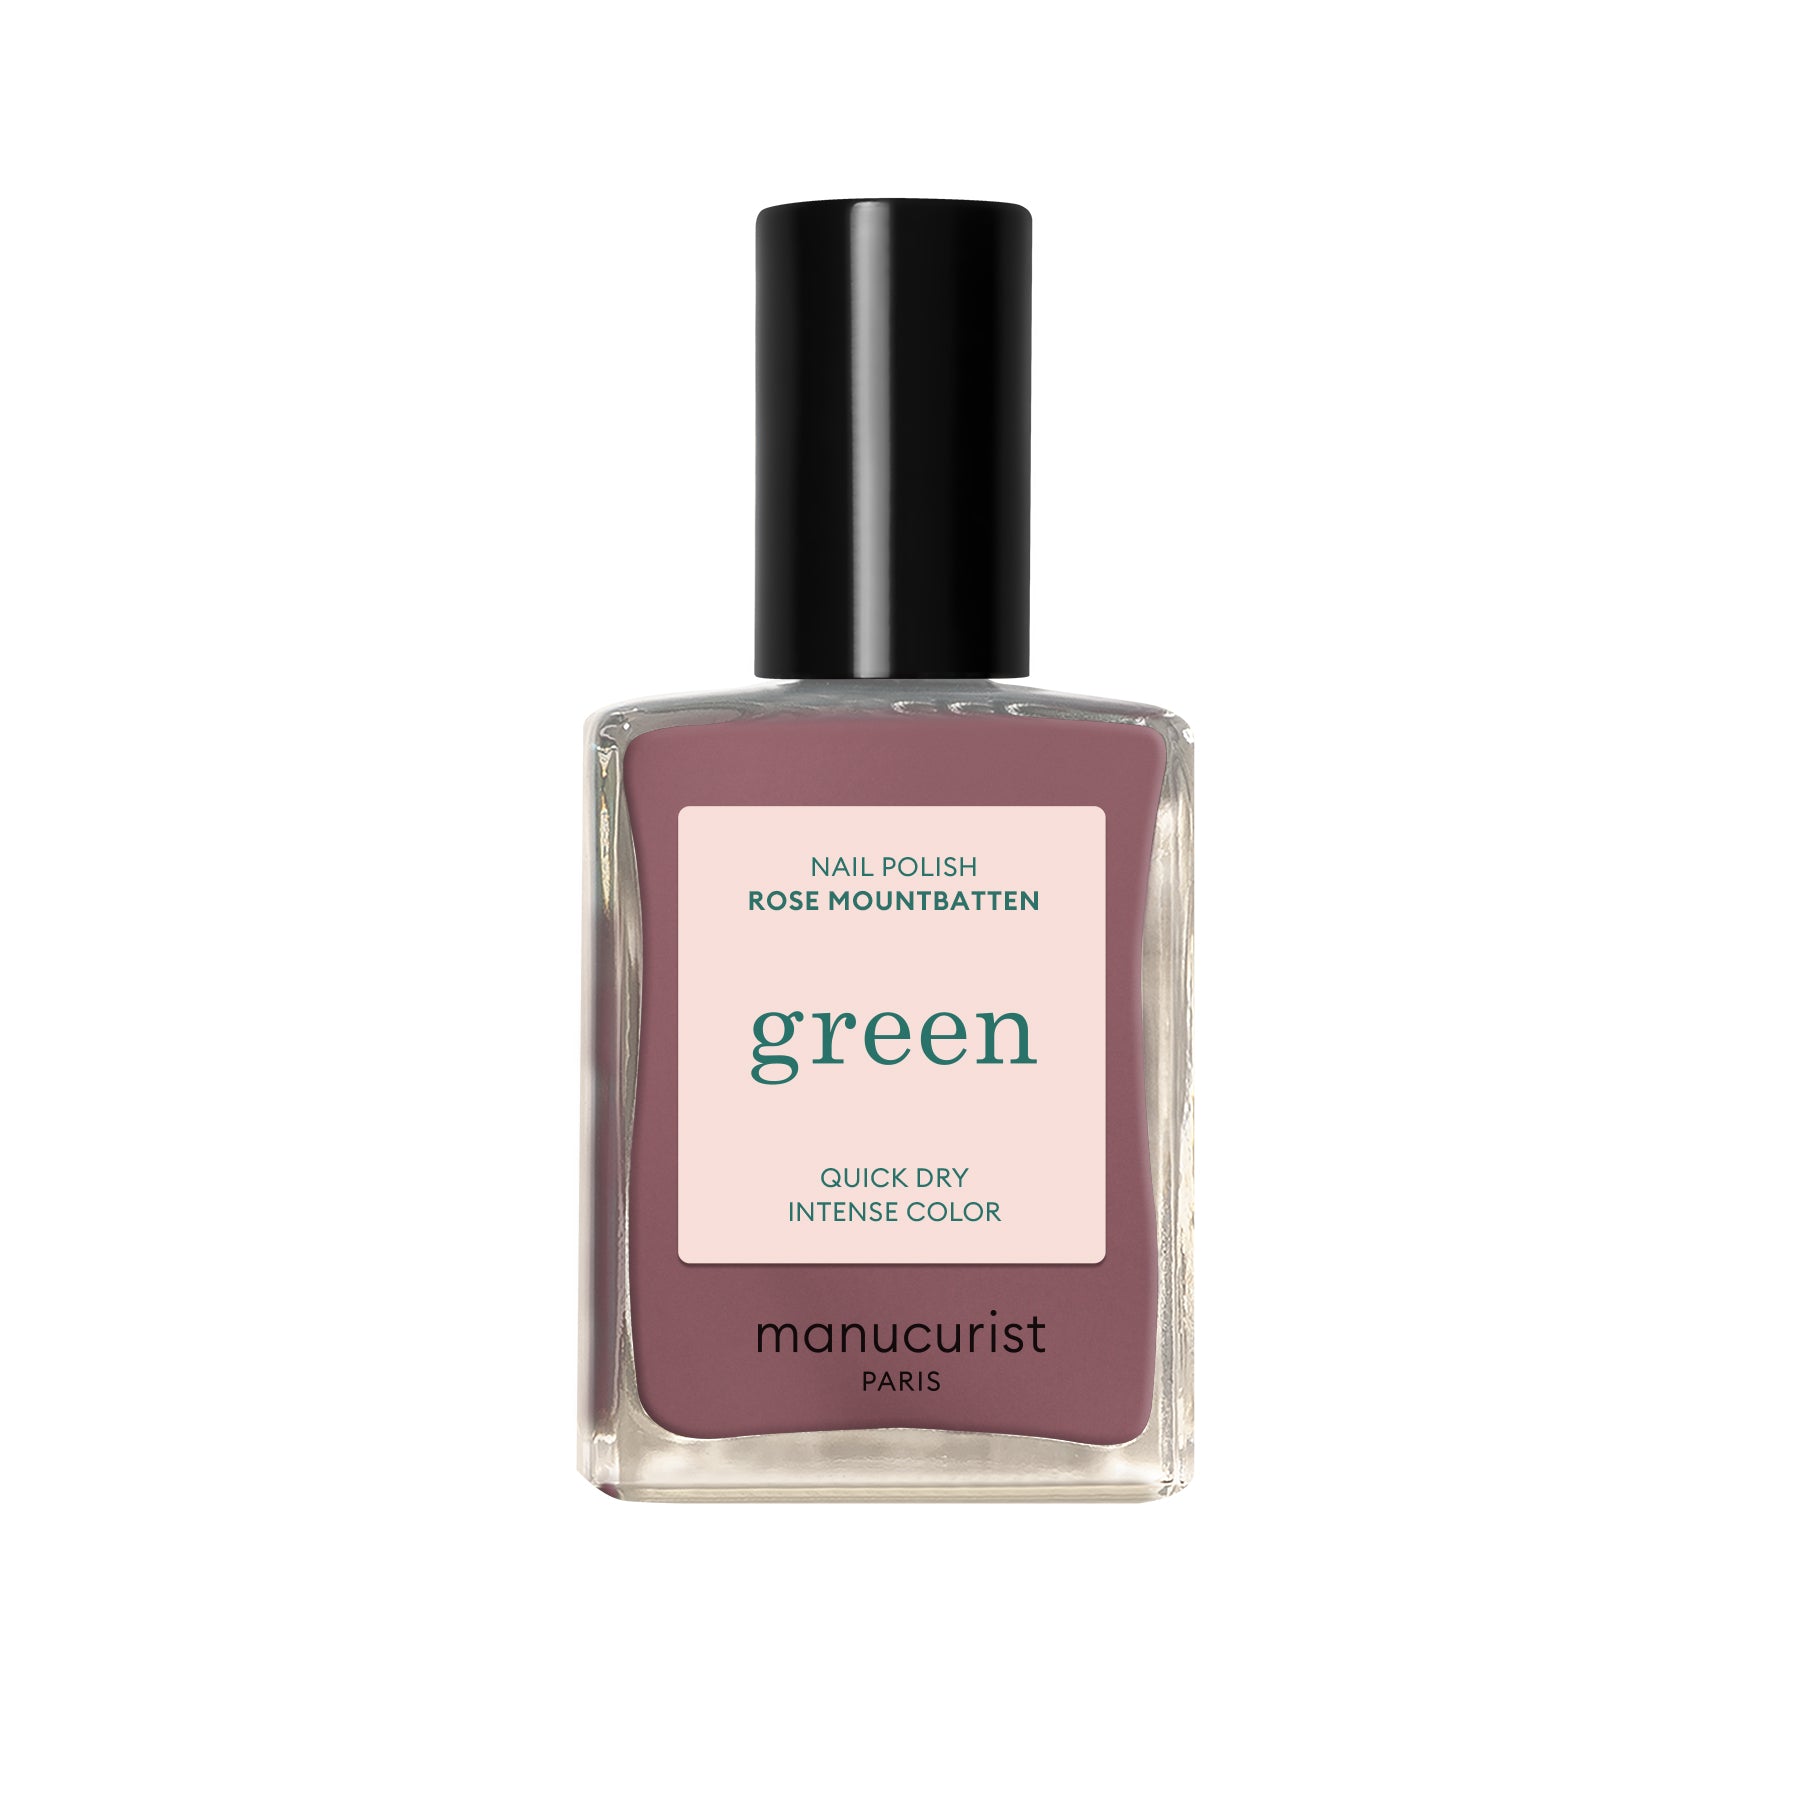 Manucurist Green lak na nehty - Rose Mountbatten (15 ml) - růžová s šedohnědými podtóny Manucurist